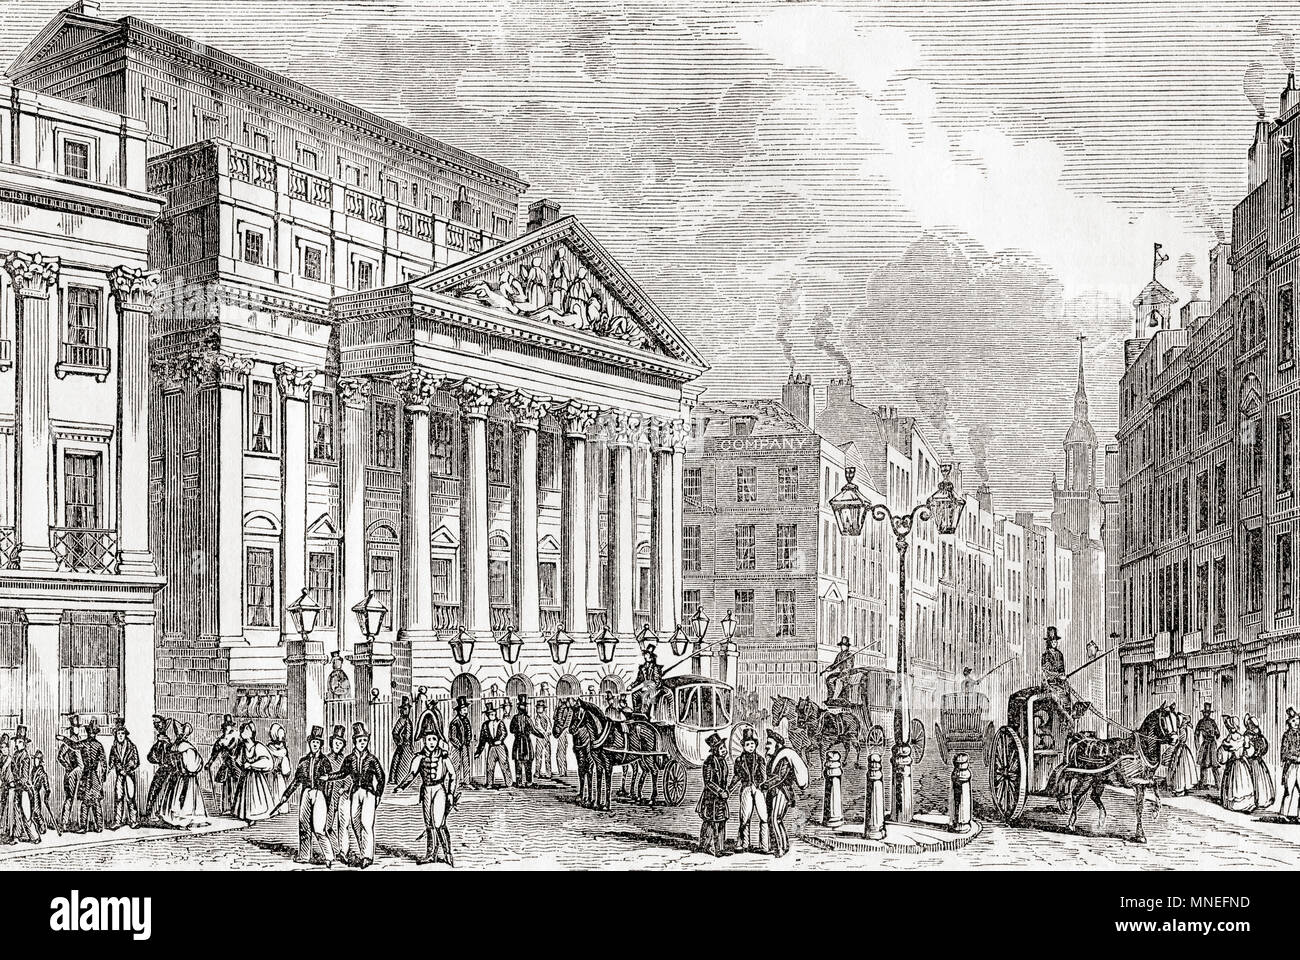 Mansion House, London, England, hier im frühen 19. Jahrhundert gesehen. Es ist die offizielle Residenz des Bürgermeisters von London. Aus Old England: eine bildliche Museum, veröffentlicht 1847. Stockfoto